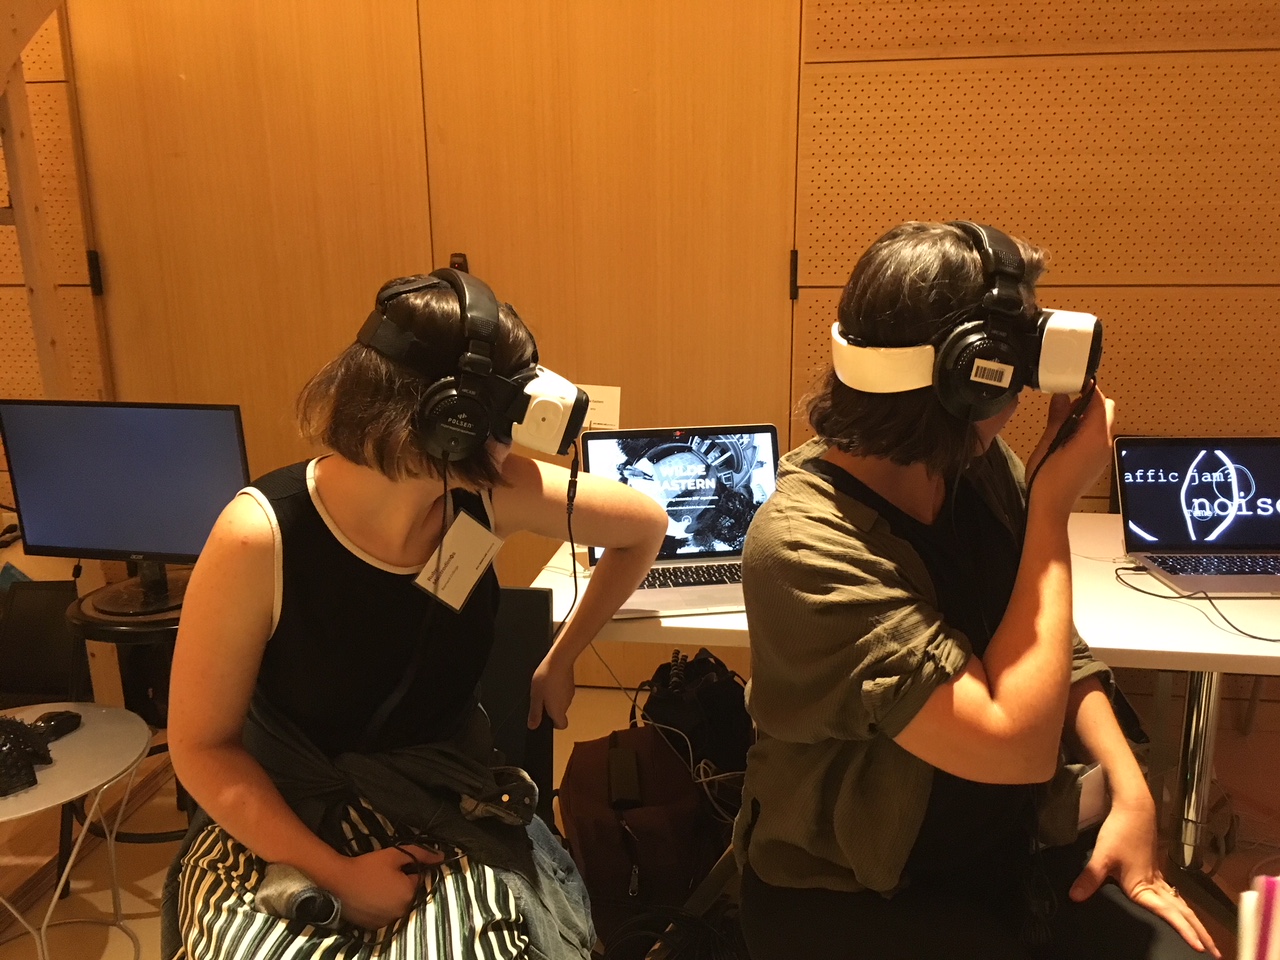 Two women wearing VR headsets